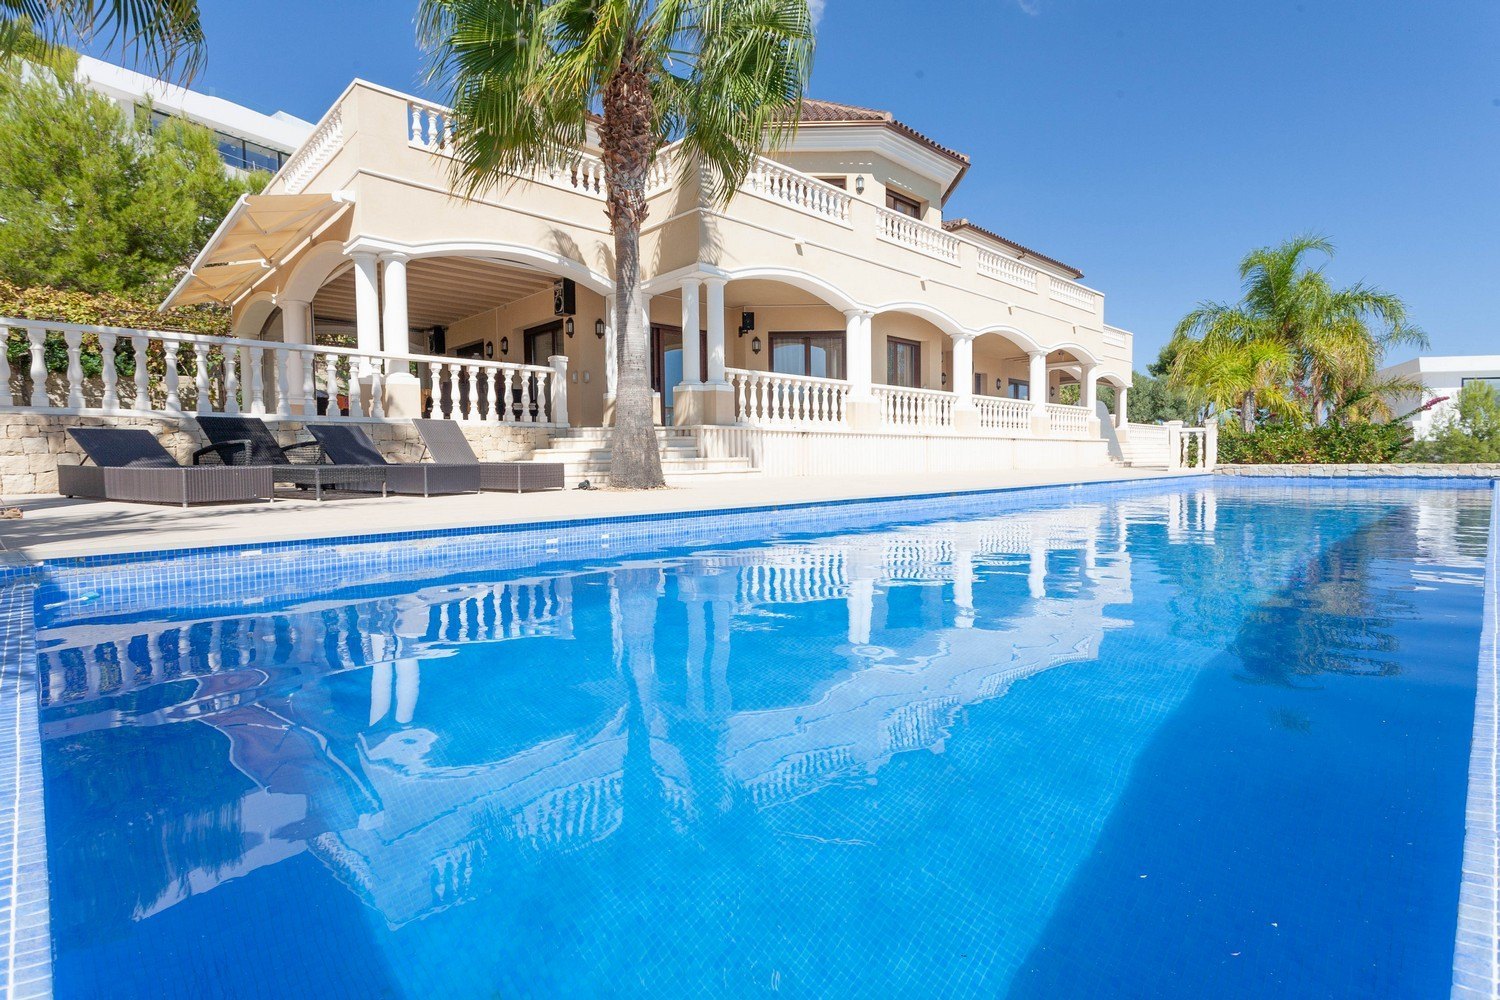 Villa im mediterranen Stil zum Kauf in Benissa, Costa Blanca